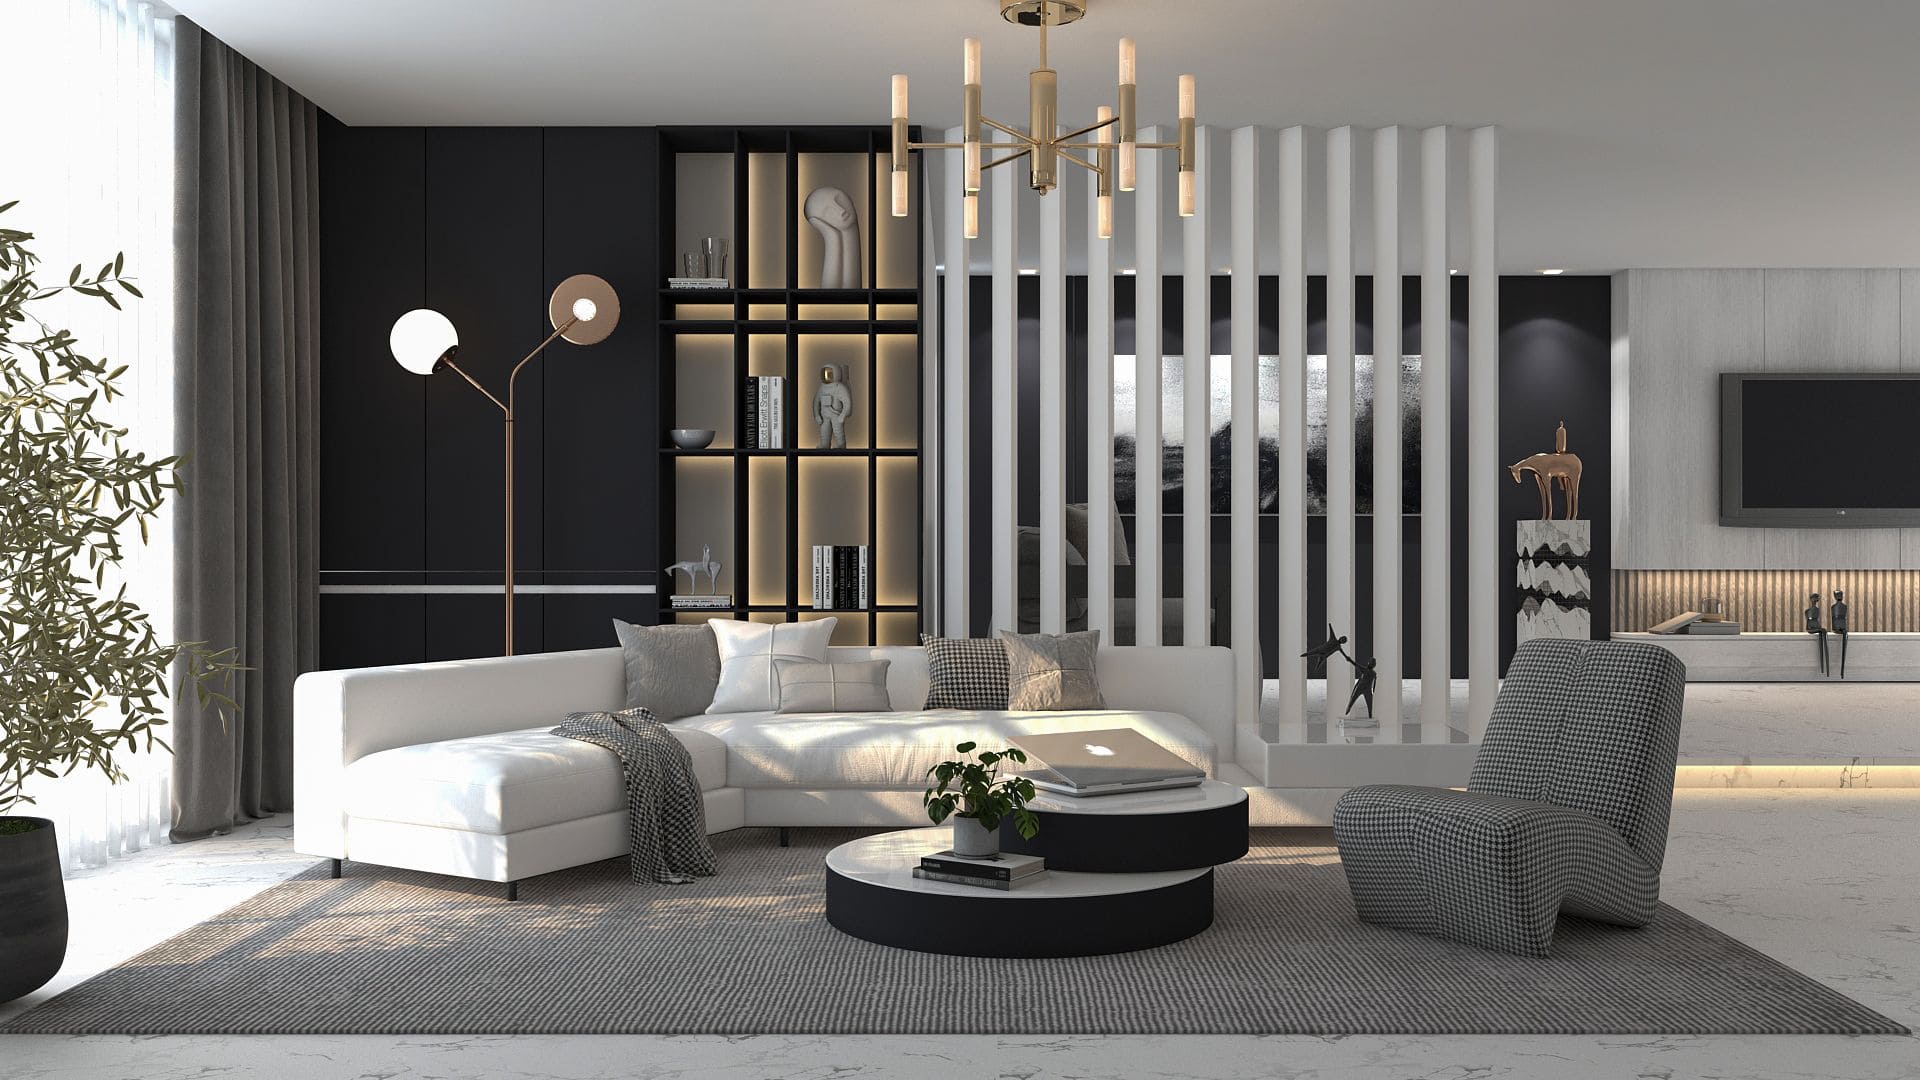 Luxurious Black & White Living Room